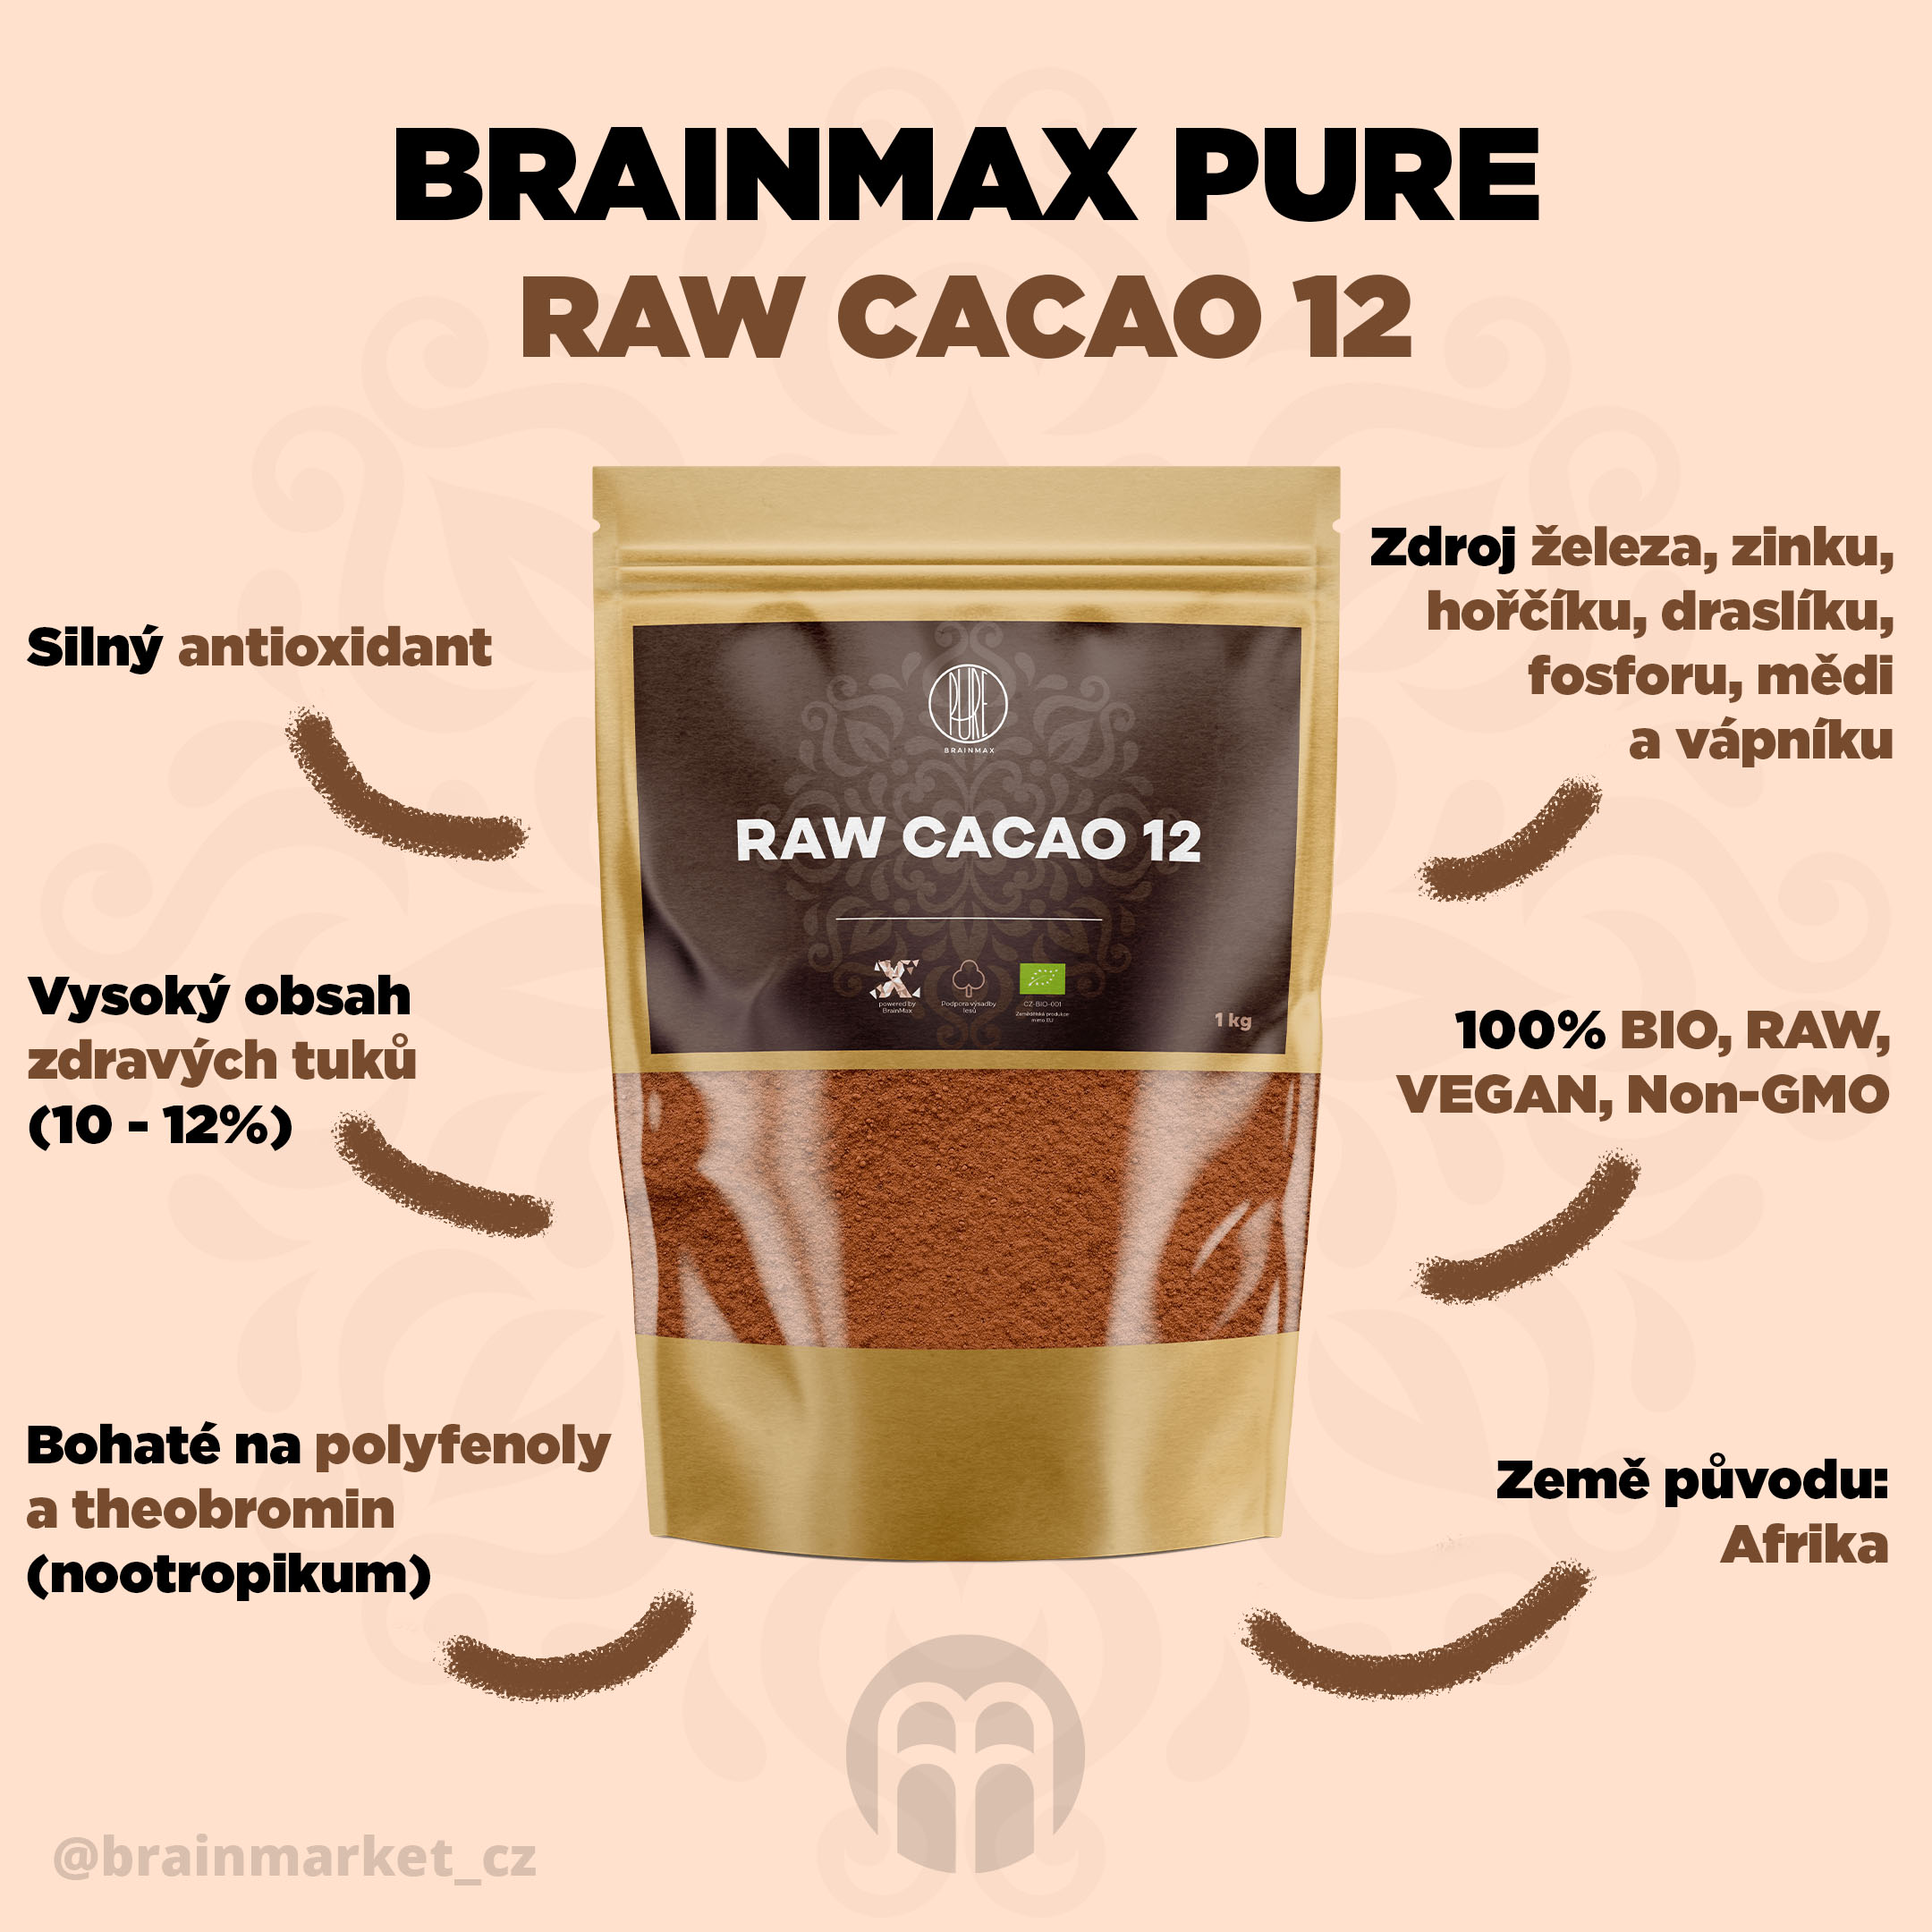 brainmax pure cacao raw 12 1kg infografika brainmarket CZ